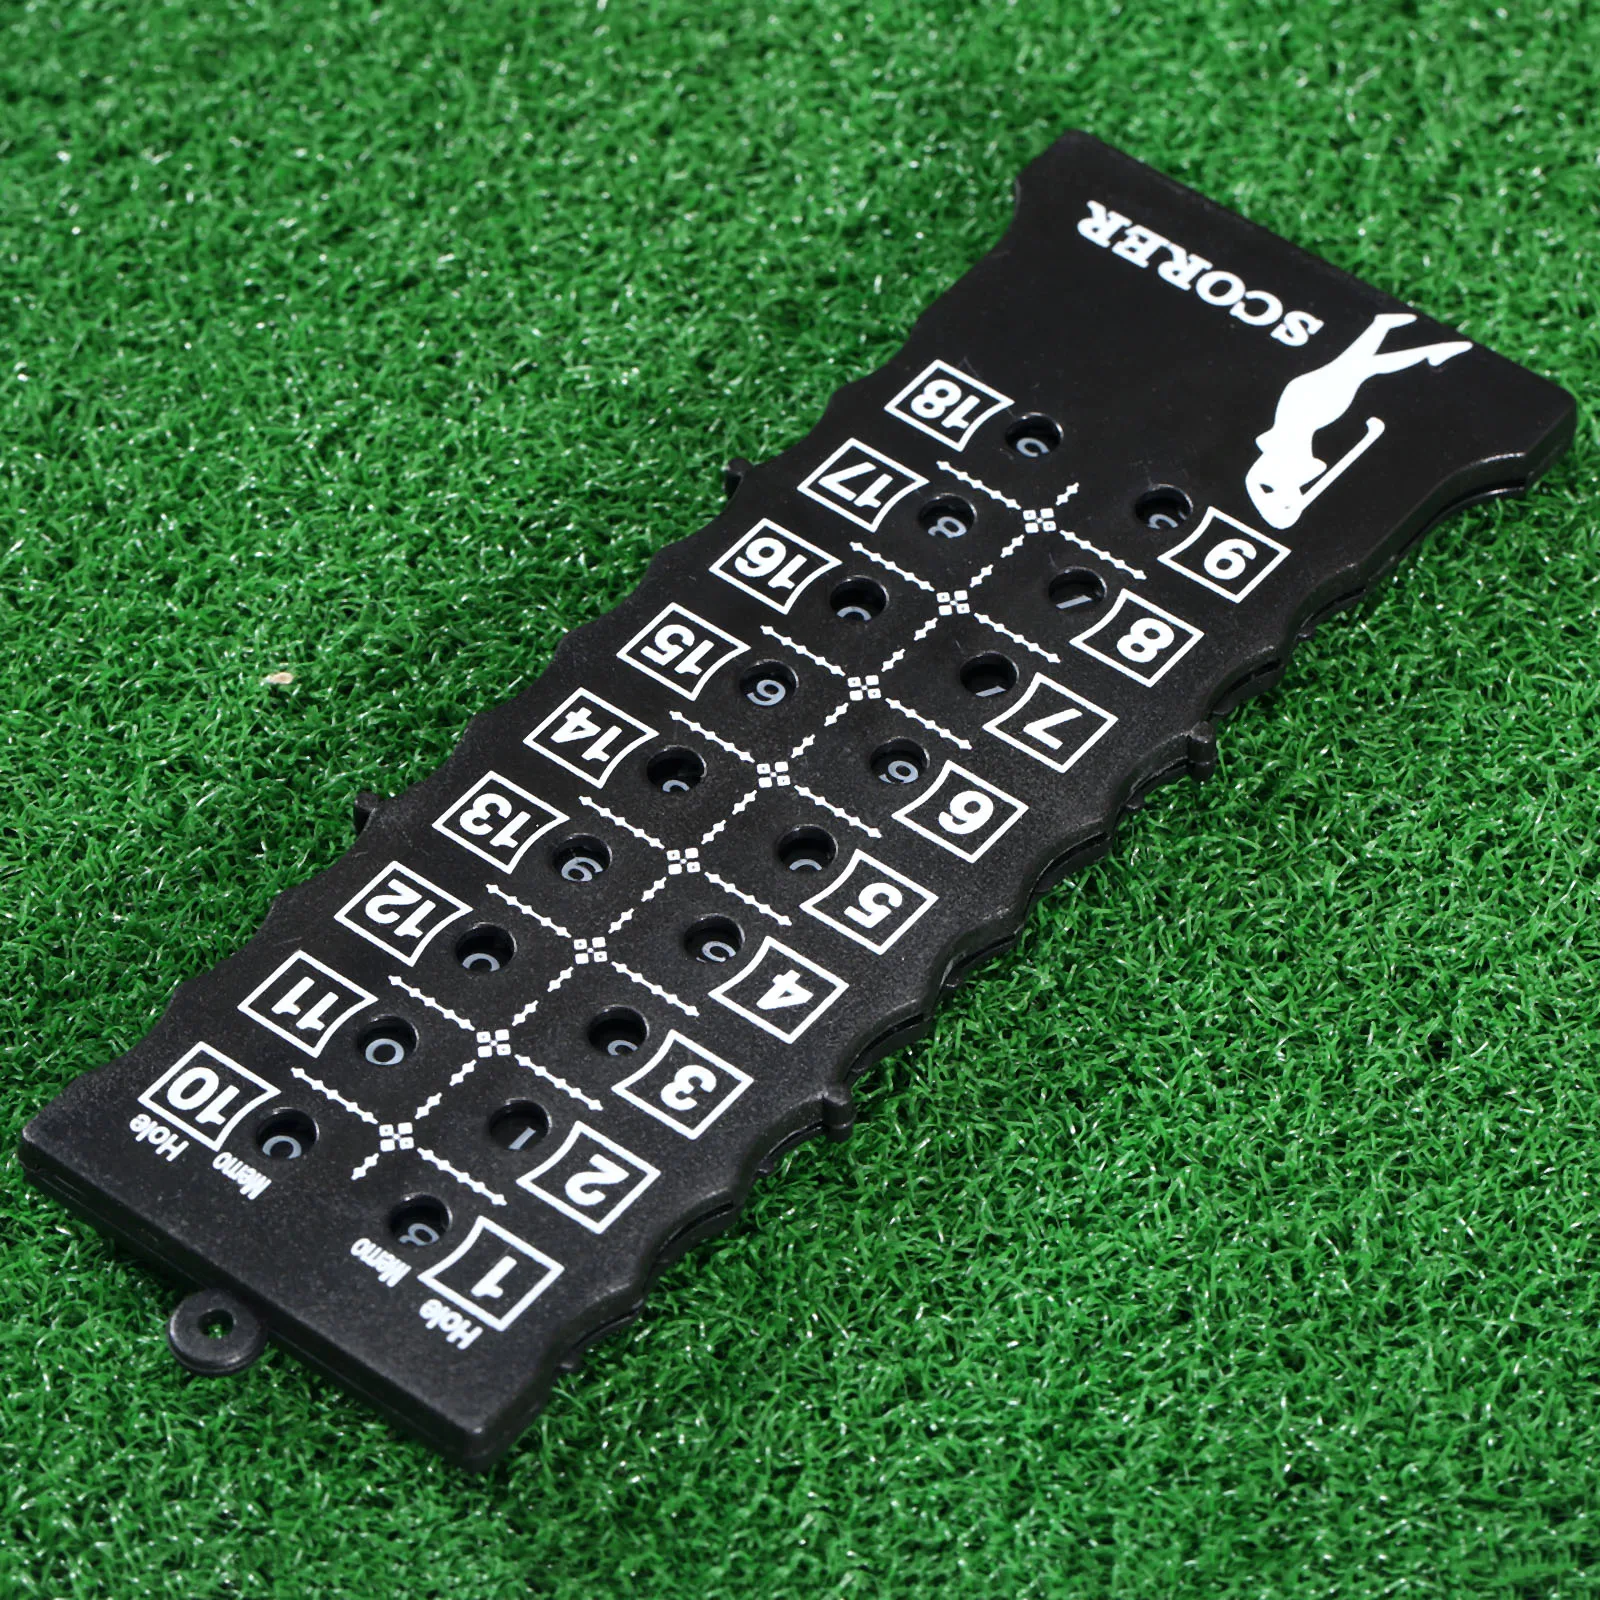 Пластиковые 18 отверстий ход гольфа Putt счетная карта счетчик индикатор счета в гольфе с брелок экологический счетчик очков в гольф черный